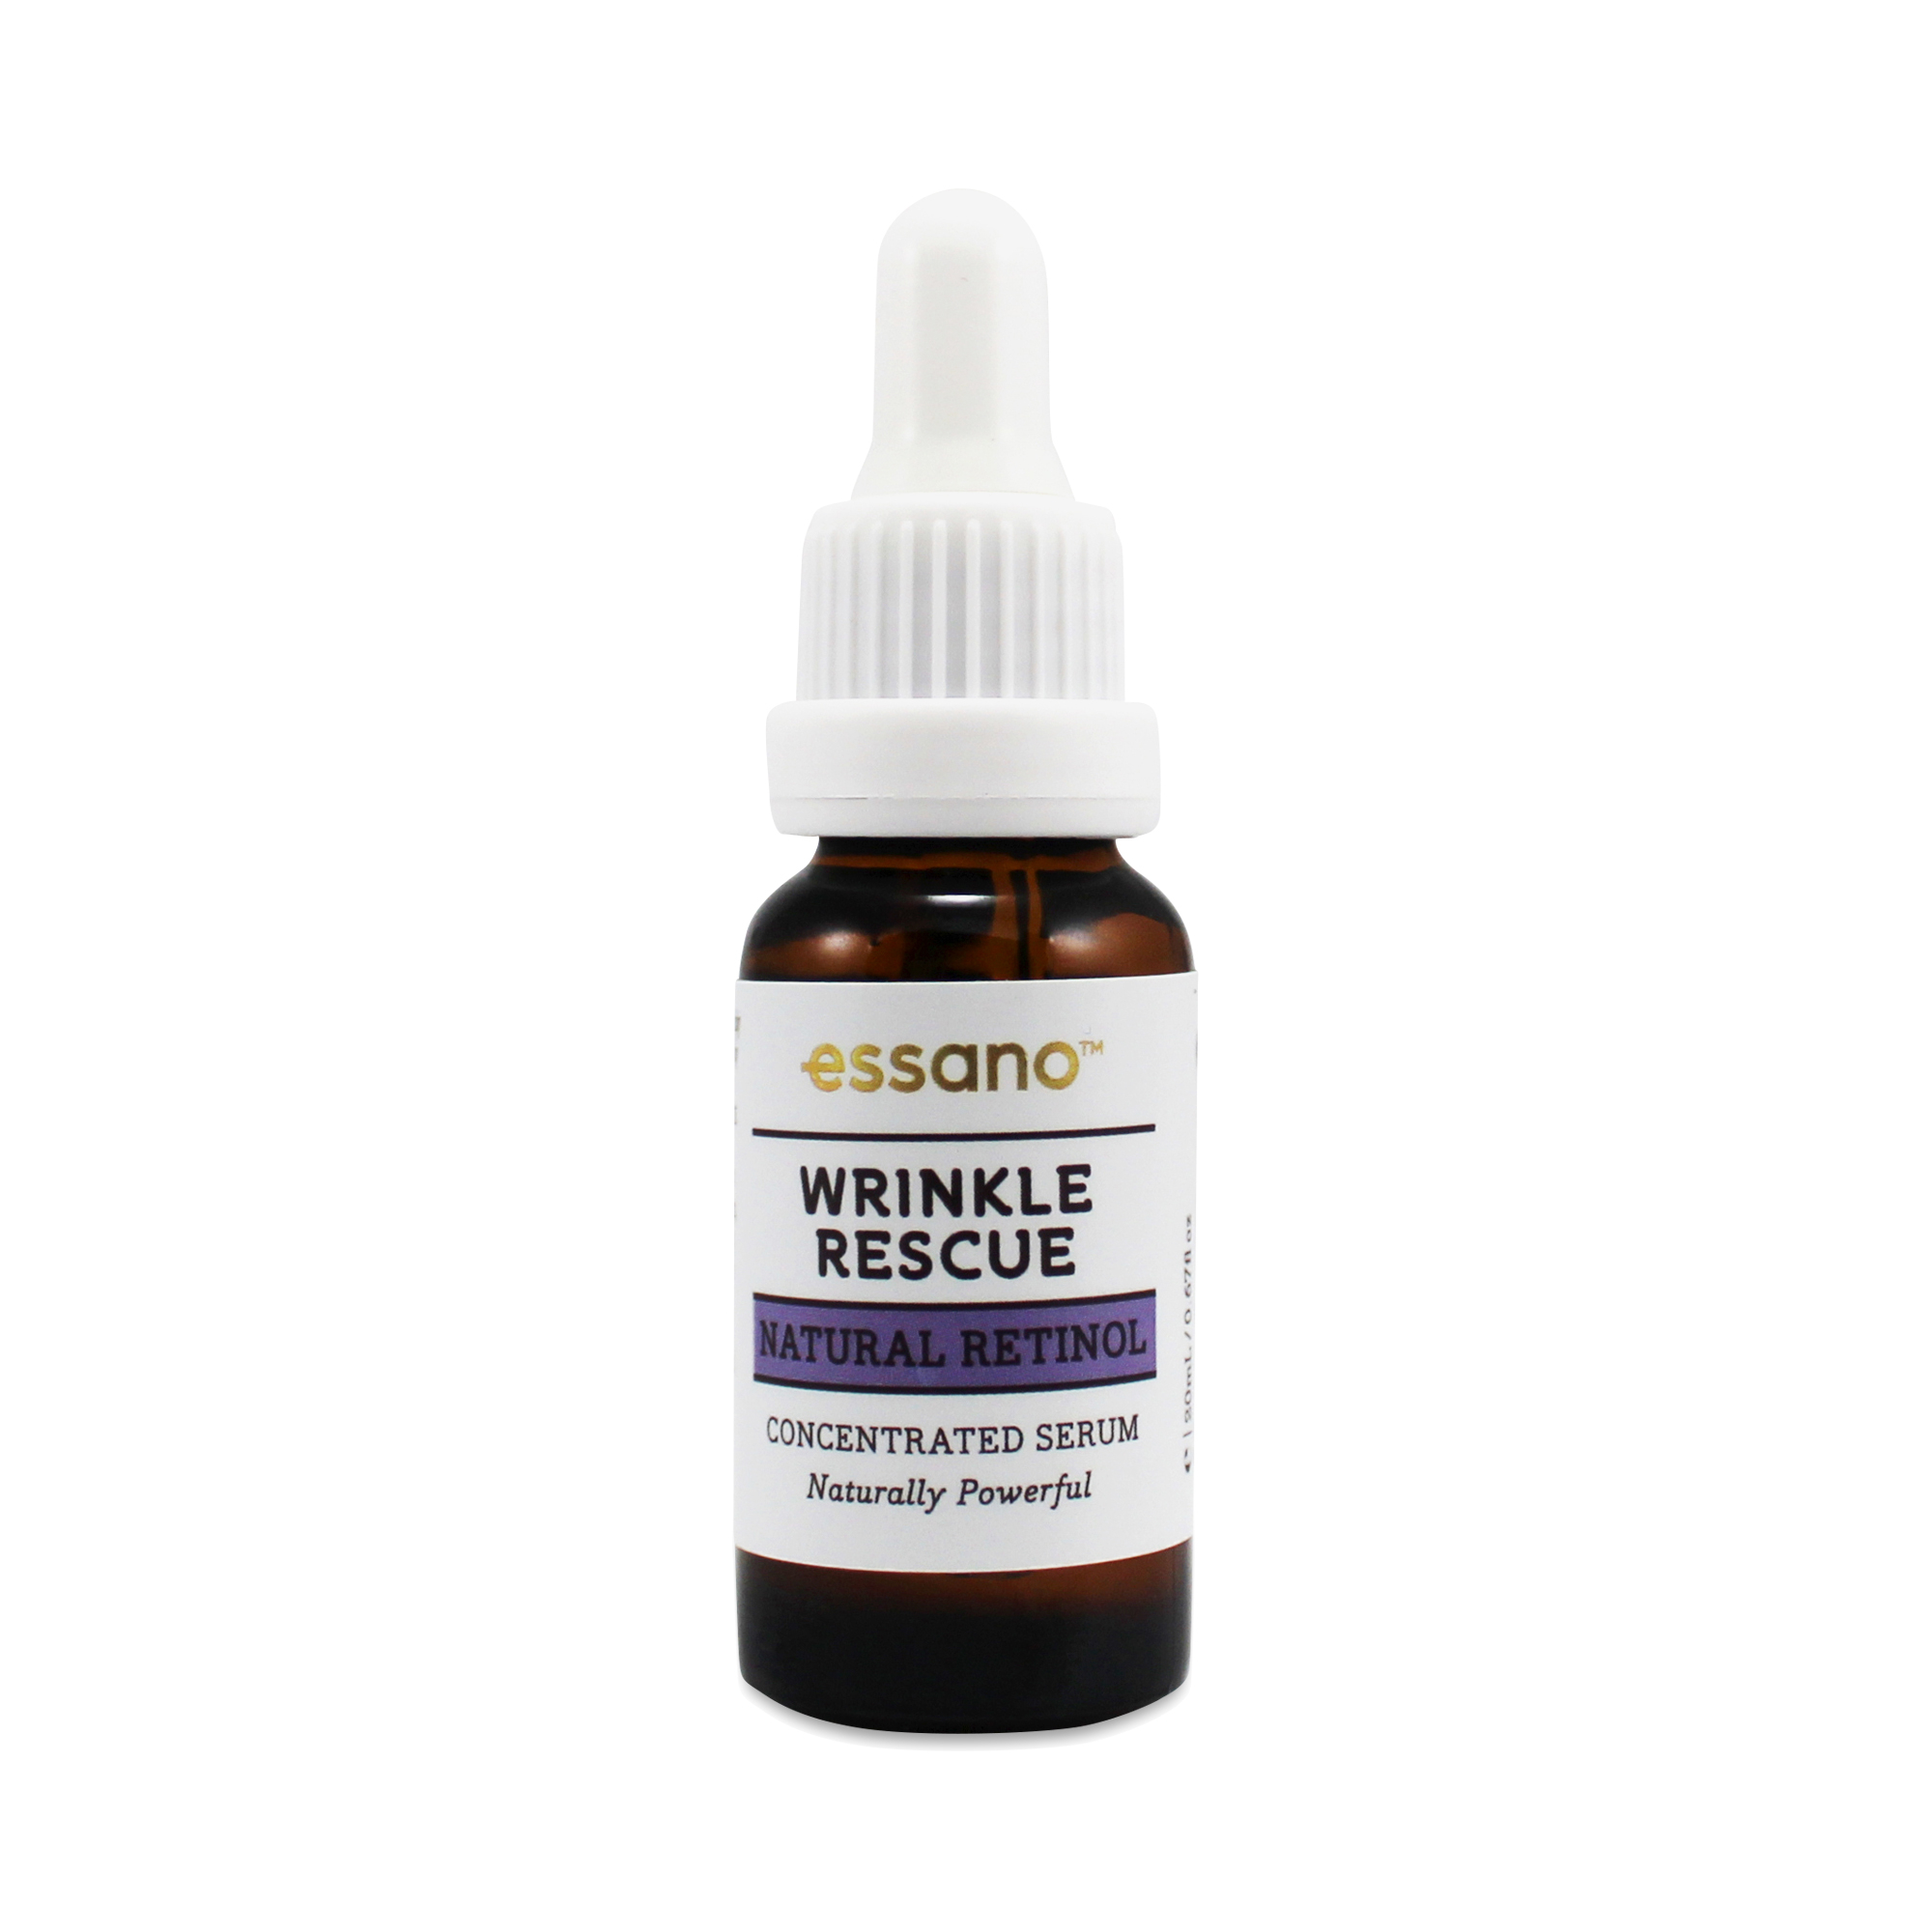 Essano Wrinkle Rescue Natural Retinol Serum 20 ml bottle